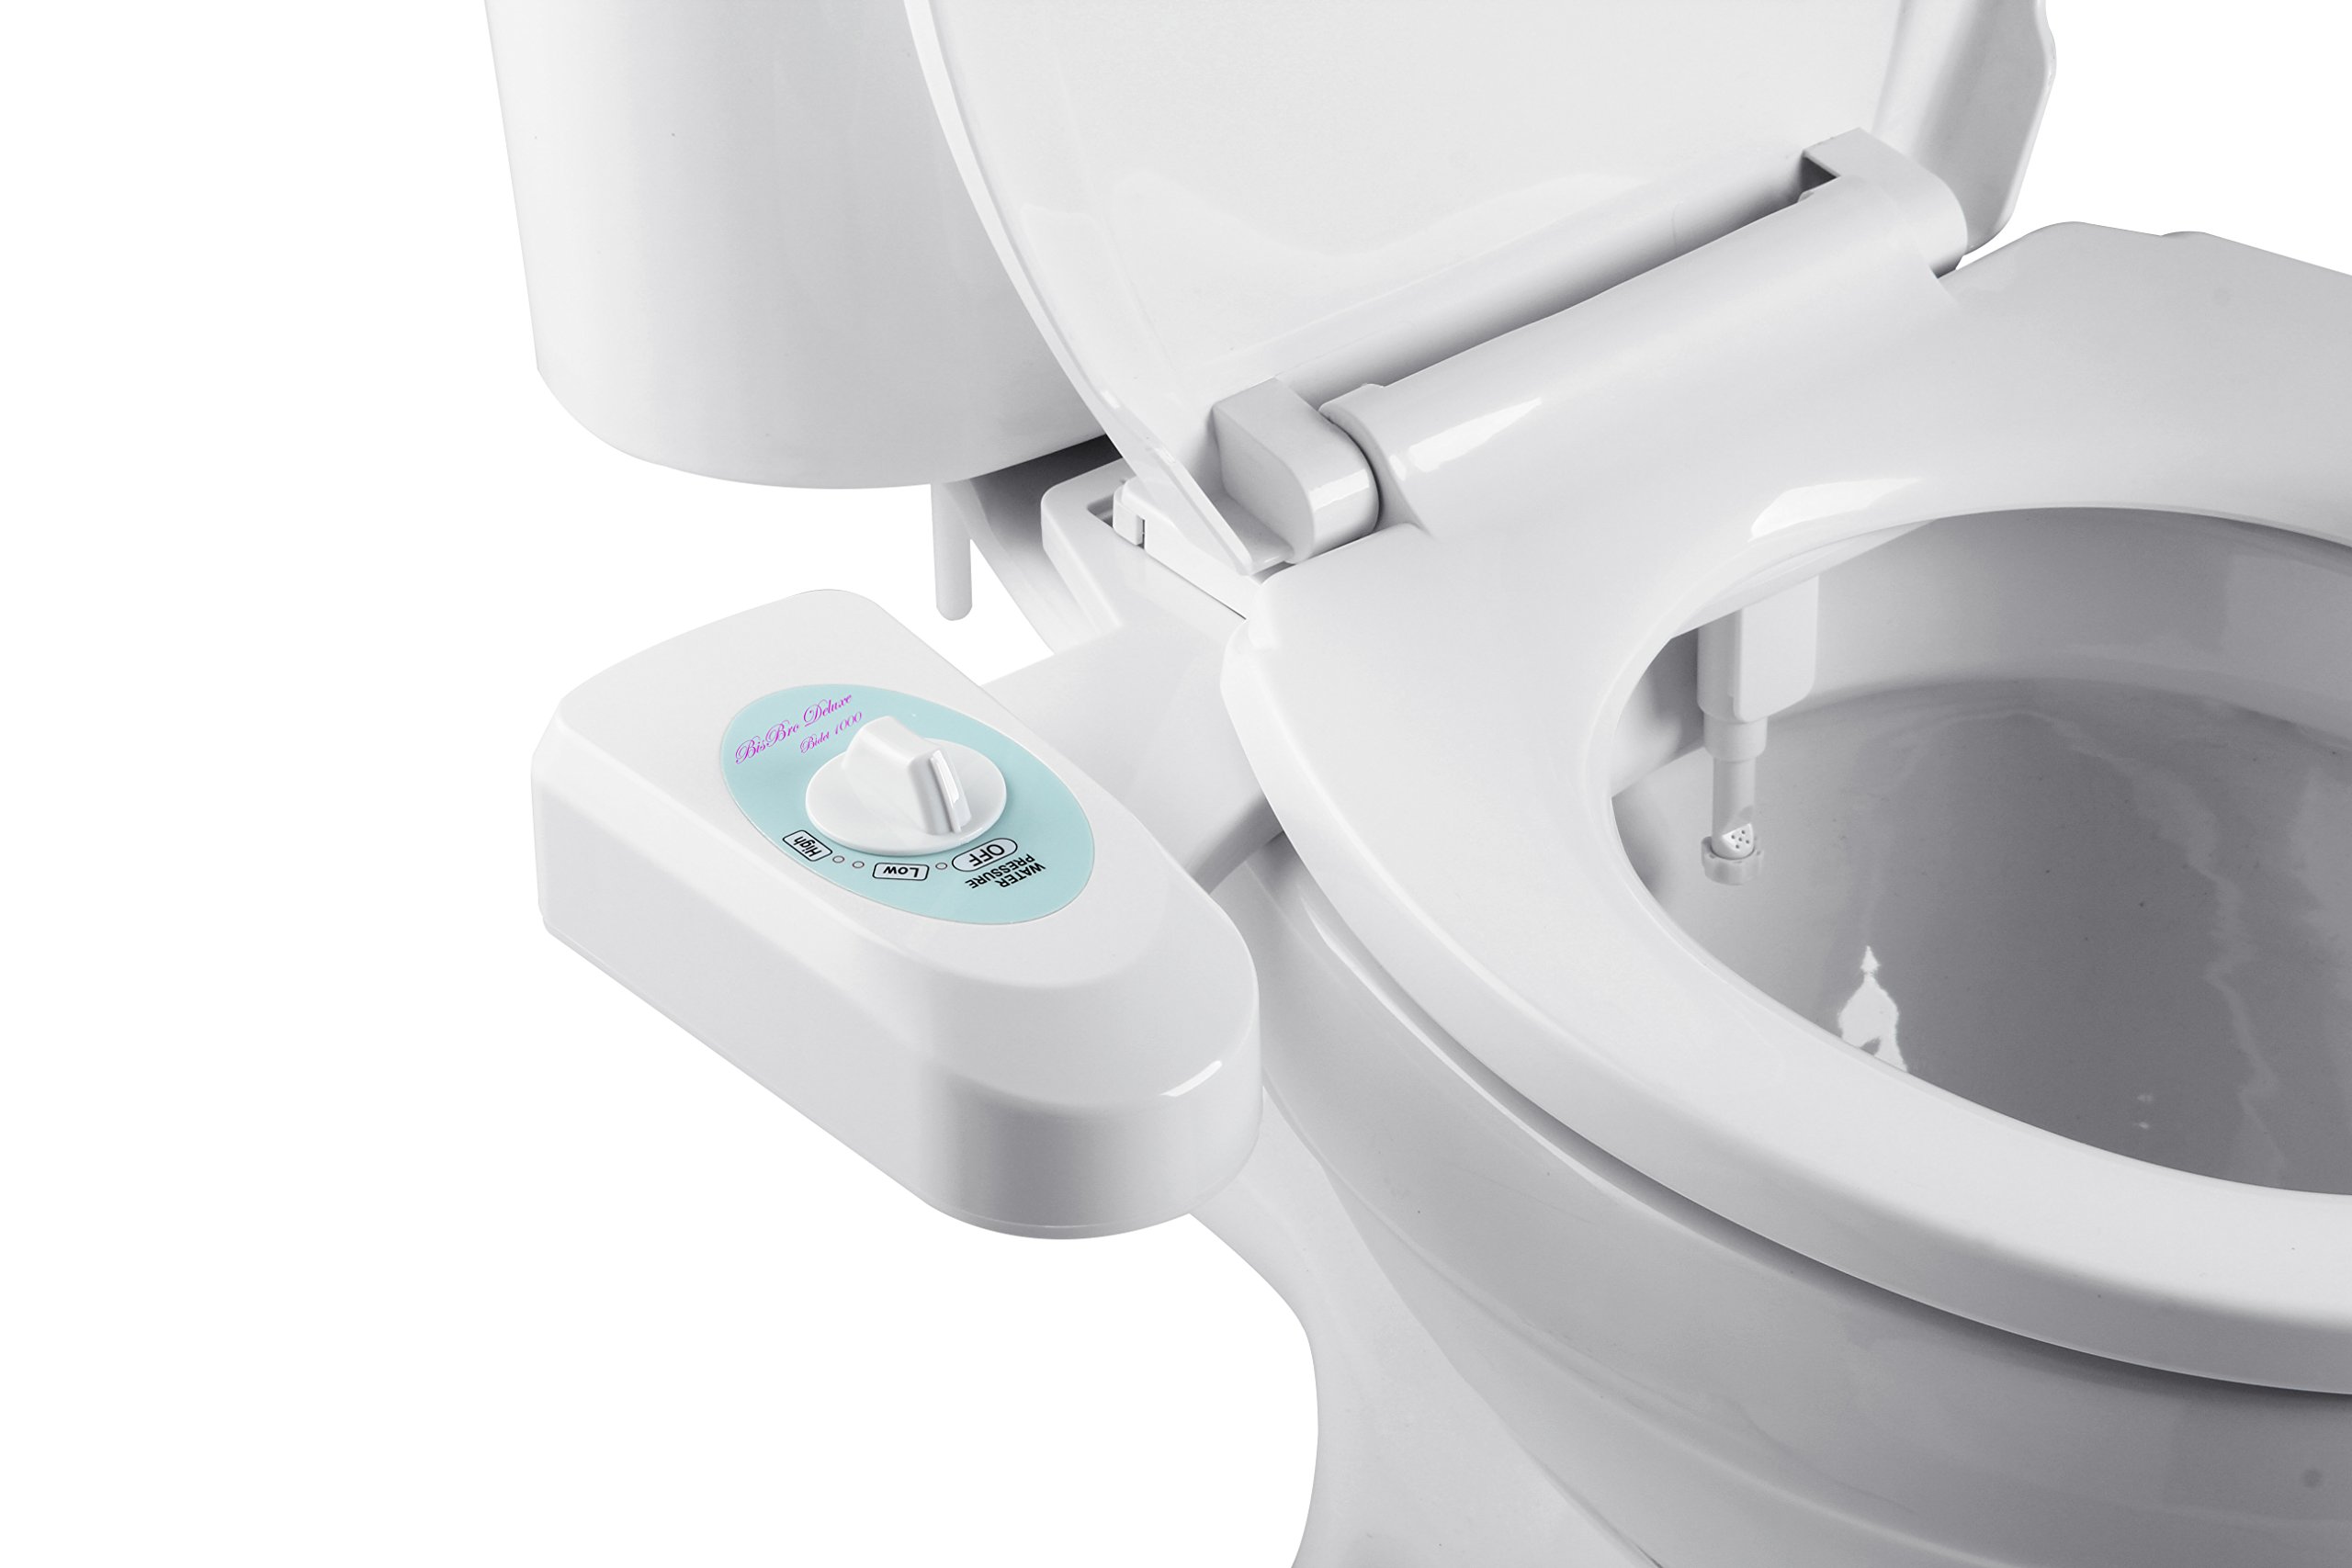 BisBro Deluxe Bidet 1000 | Dusch-WC zur optimalen Intimpflege | Einfach unter dem Klodeckel installieren | funktioniert ohne Strom | ideale Hygiene durch Wasser | Sparen Sie Toilettenpapier